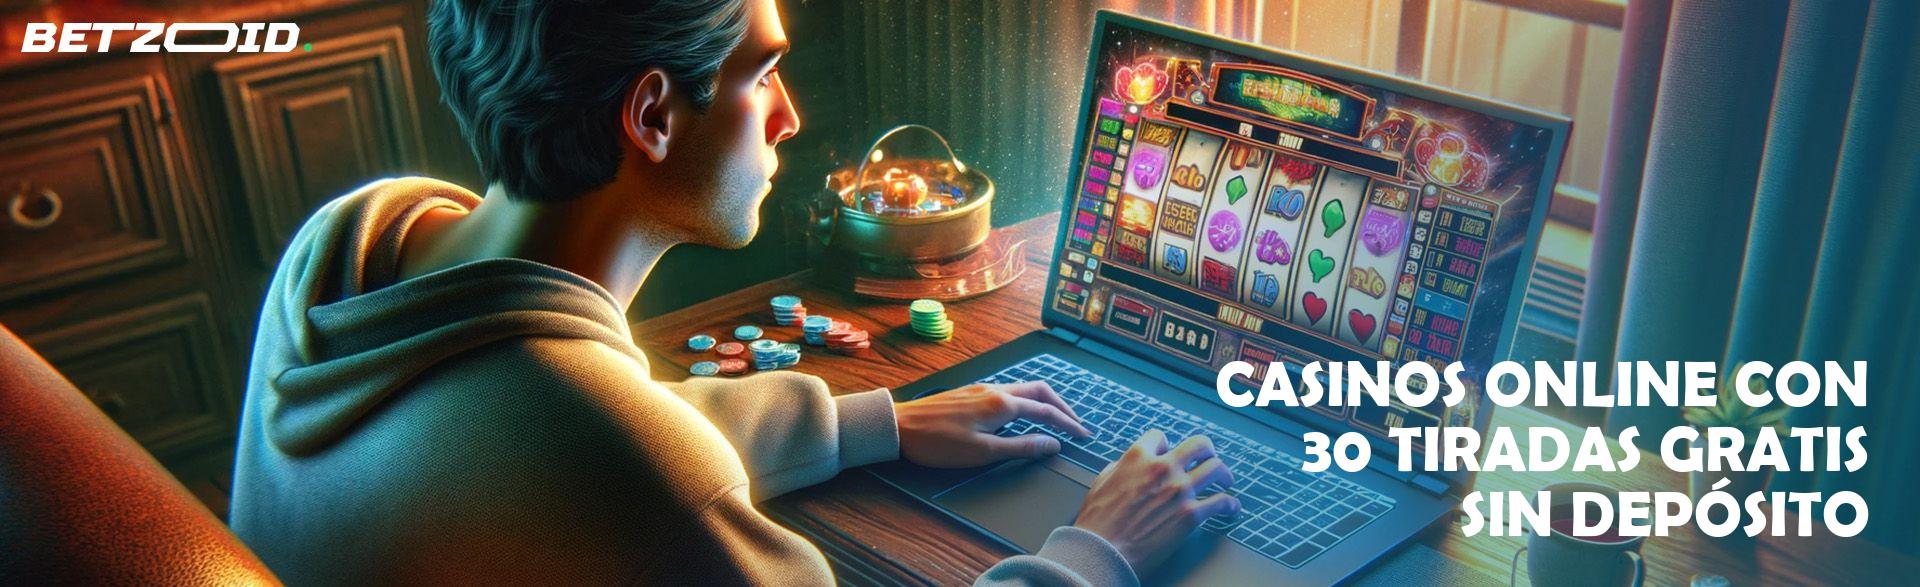 Casinos Online con 30 Tiradas Gratis sin Depósito.